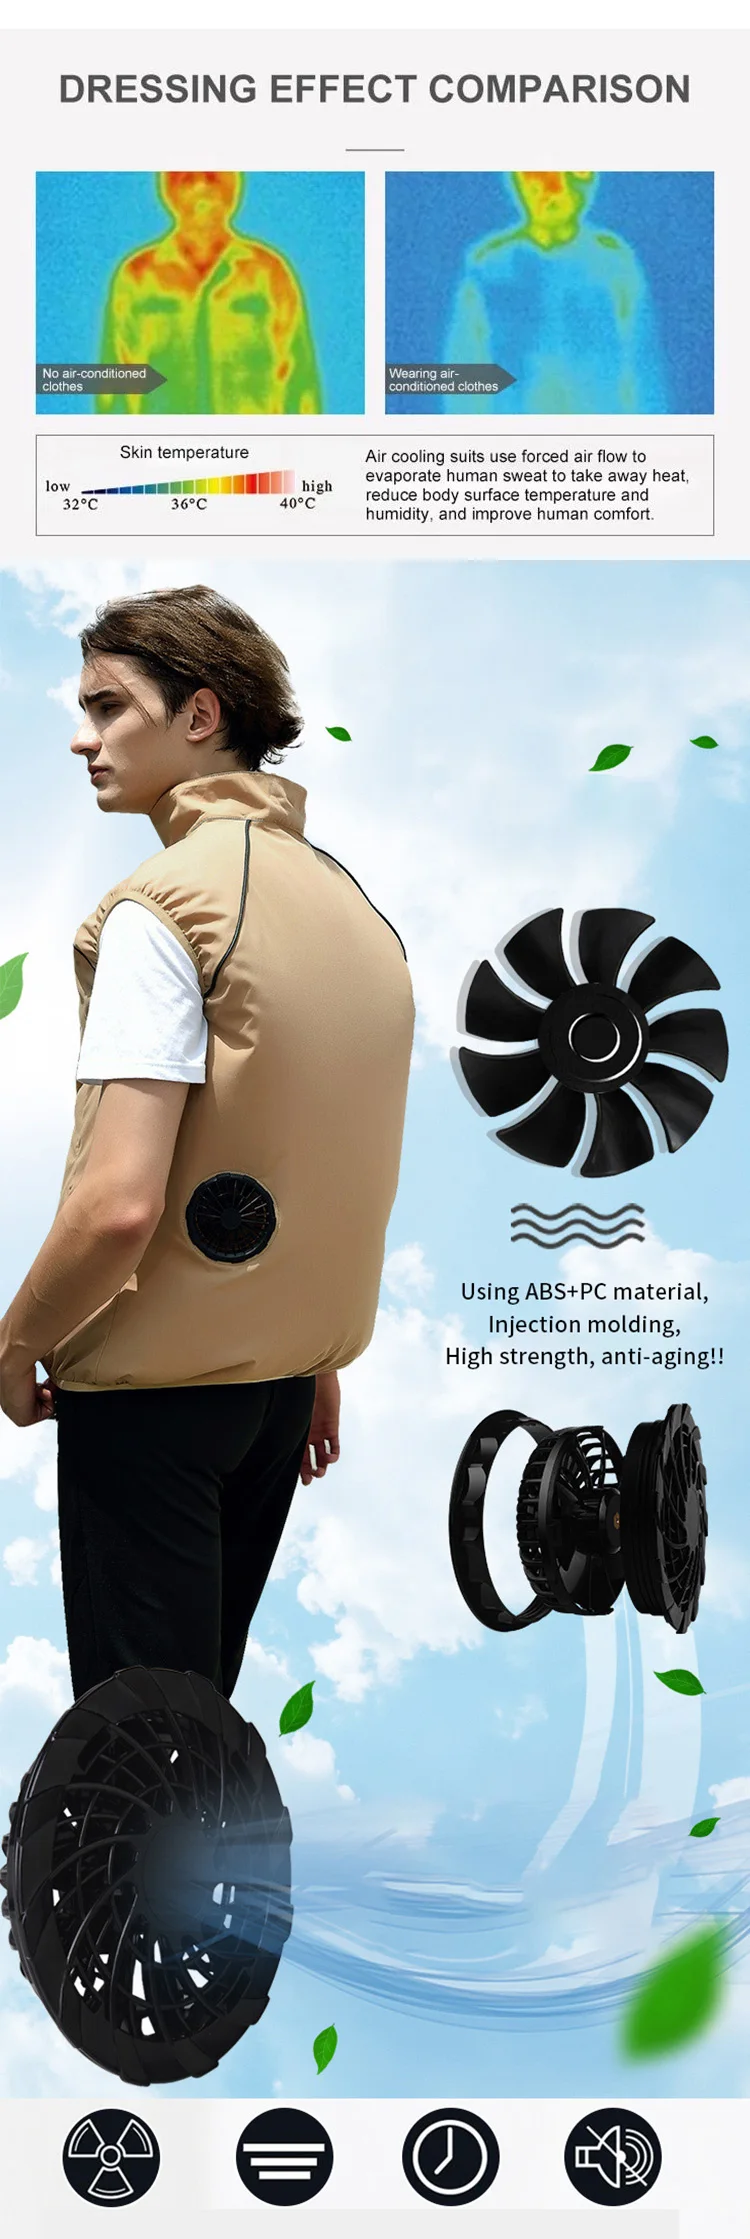 cooling vest for men | cooling vest for women | women's cooling vest | motorcycle cooling vest | battery powered cooling vest | cooling vests for workers